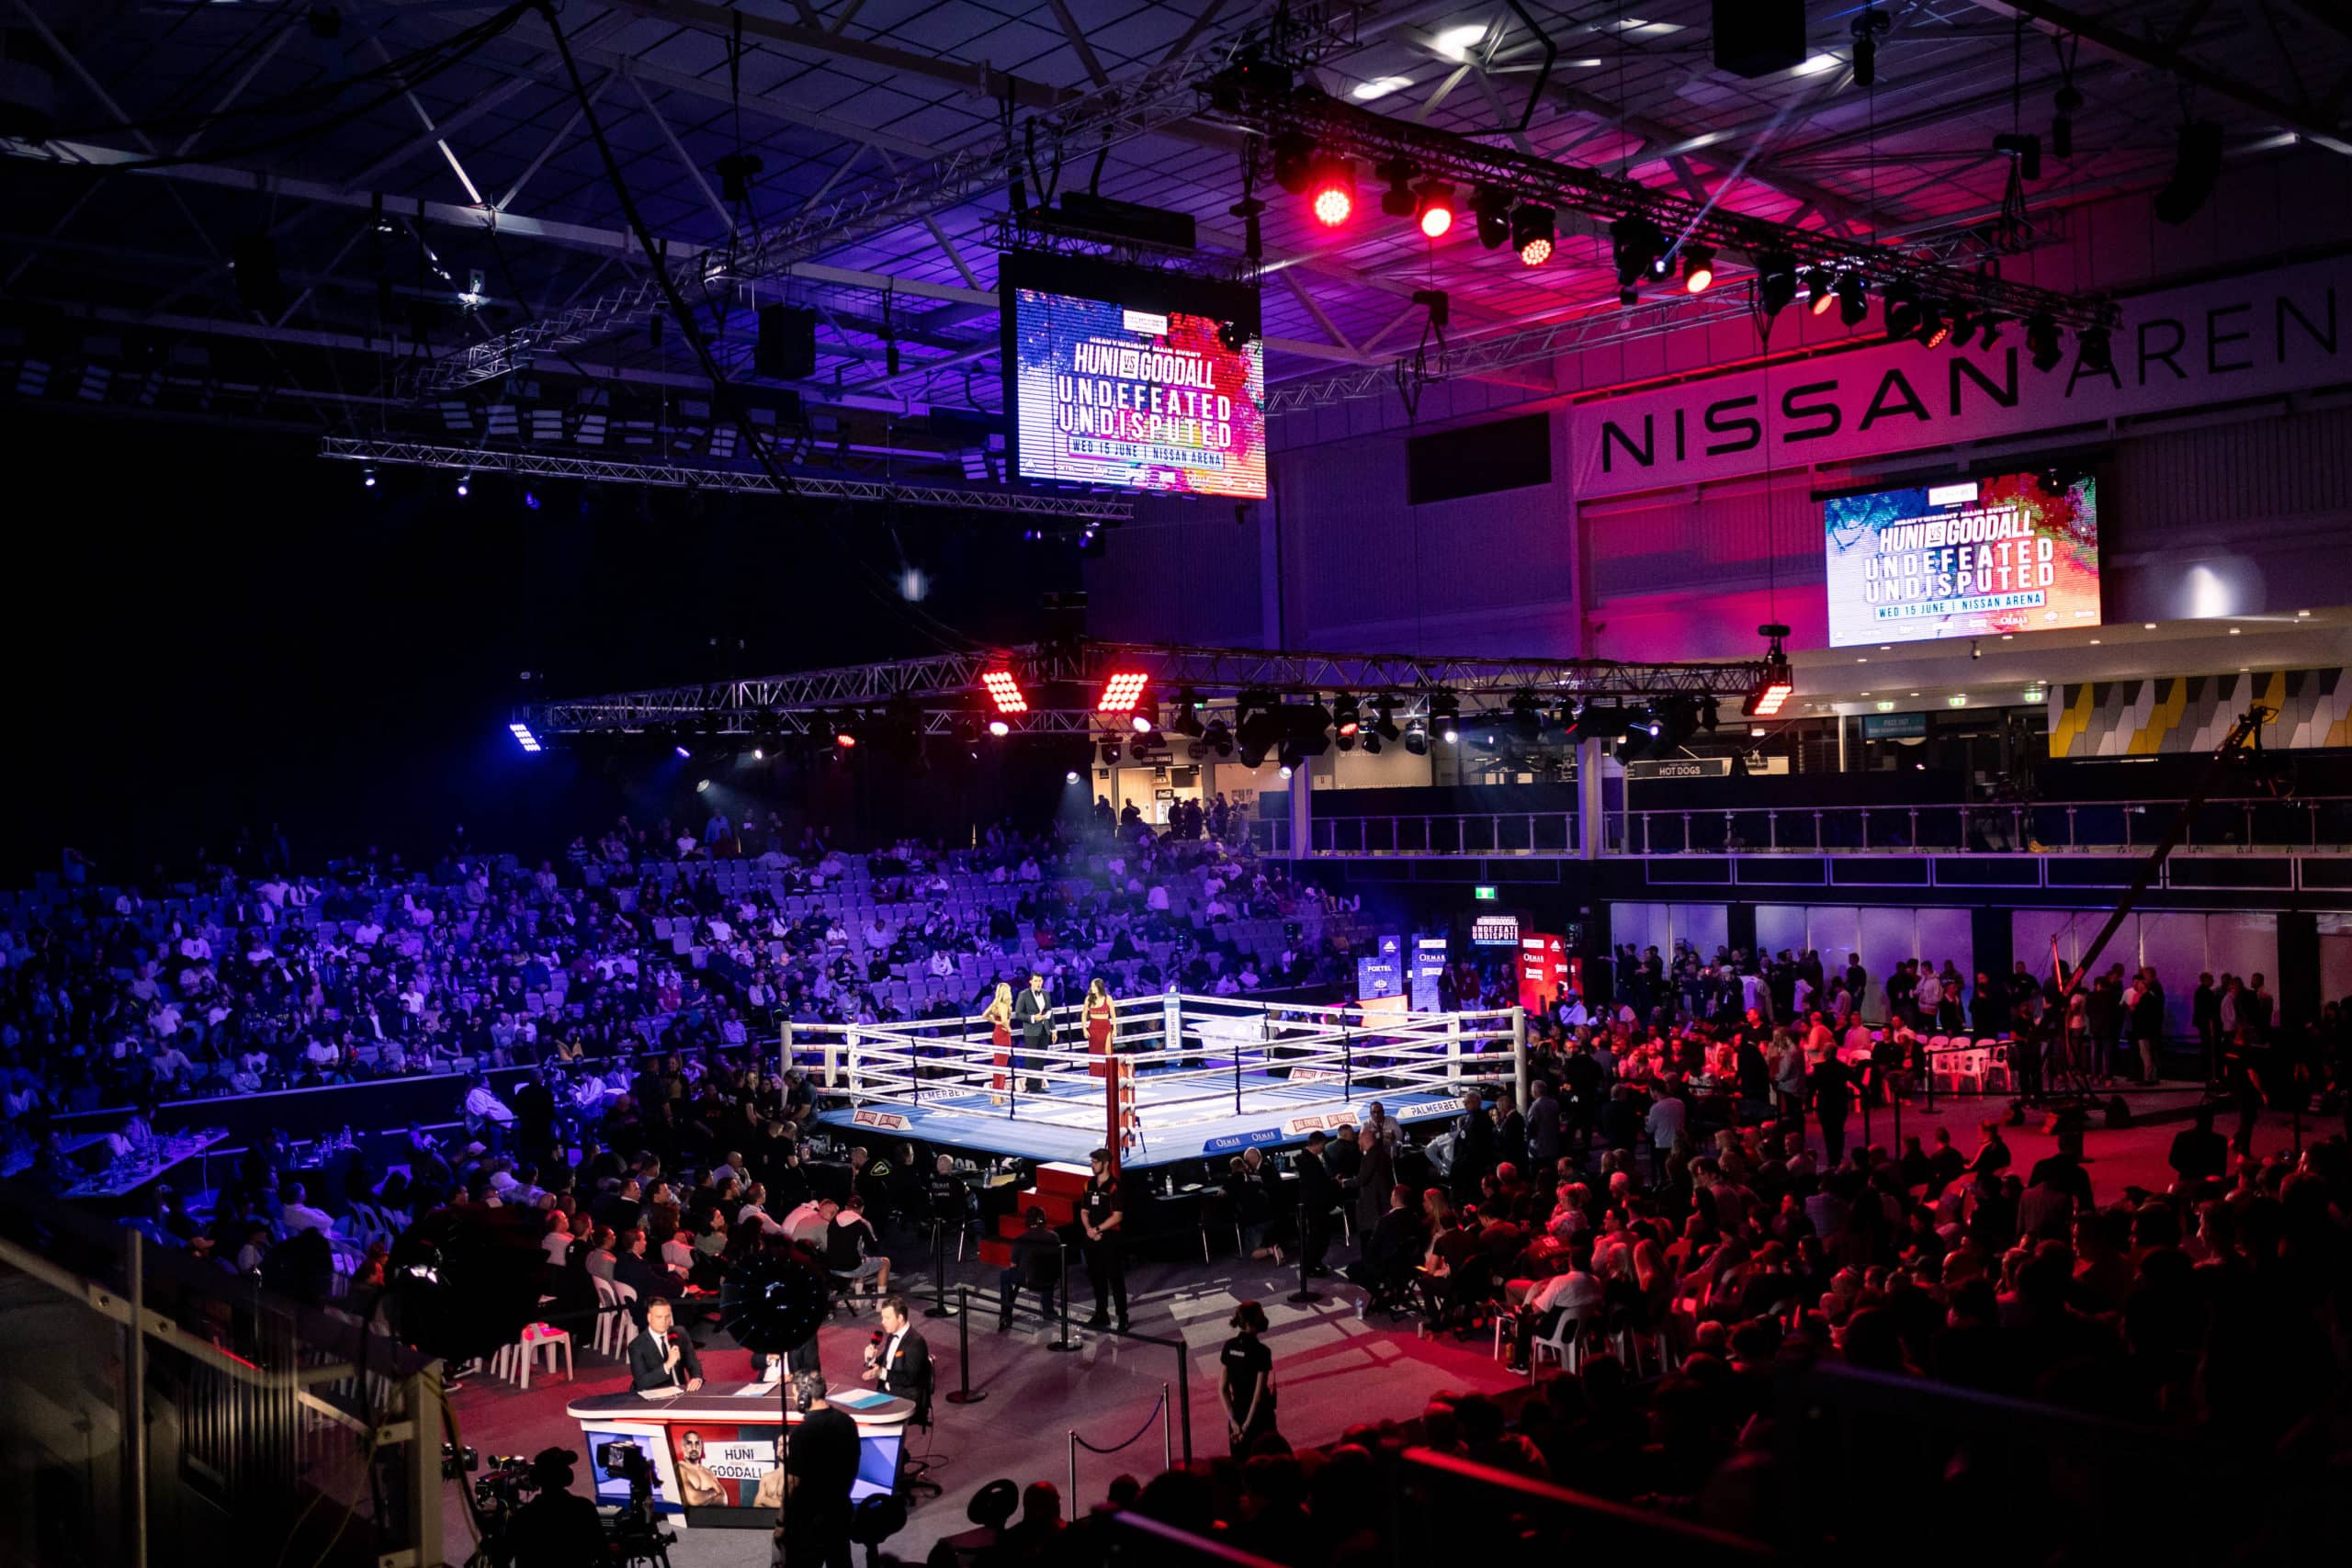 Huni vs Goodall Boxing at Nissan Arena